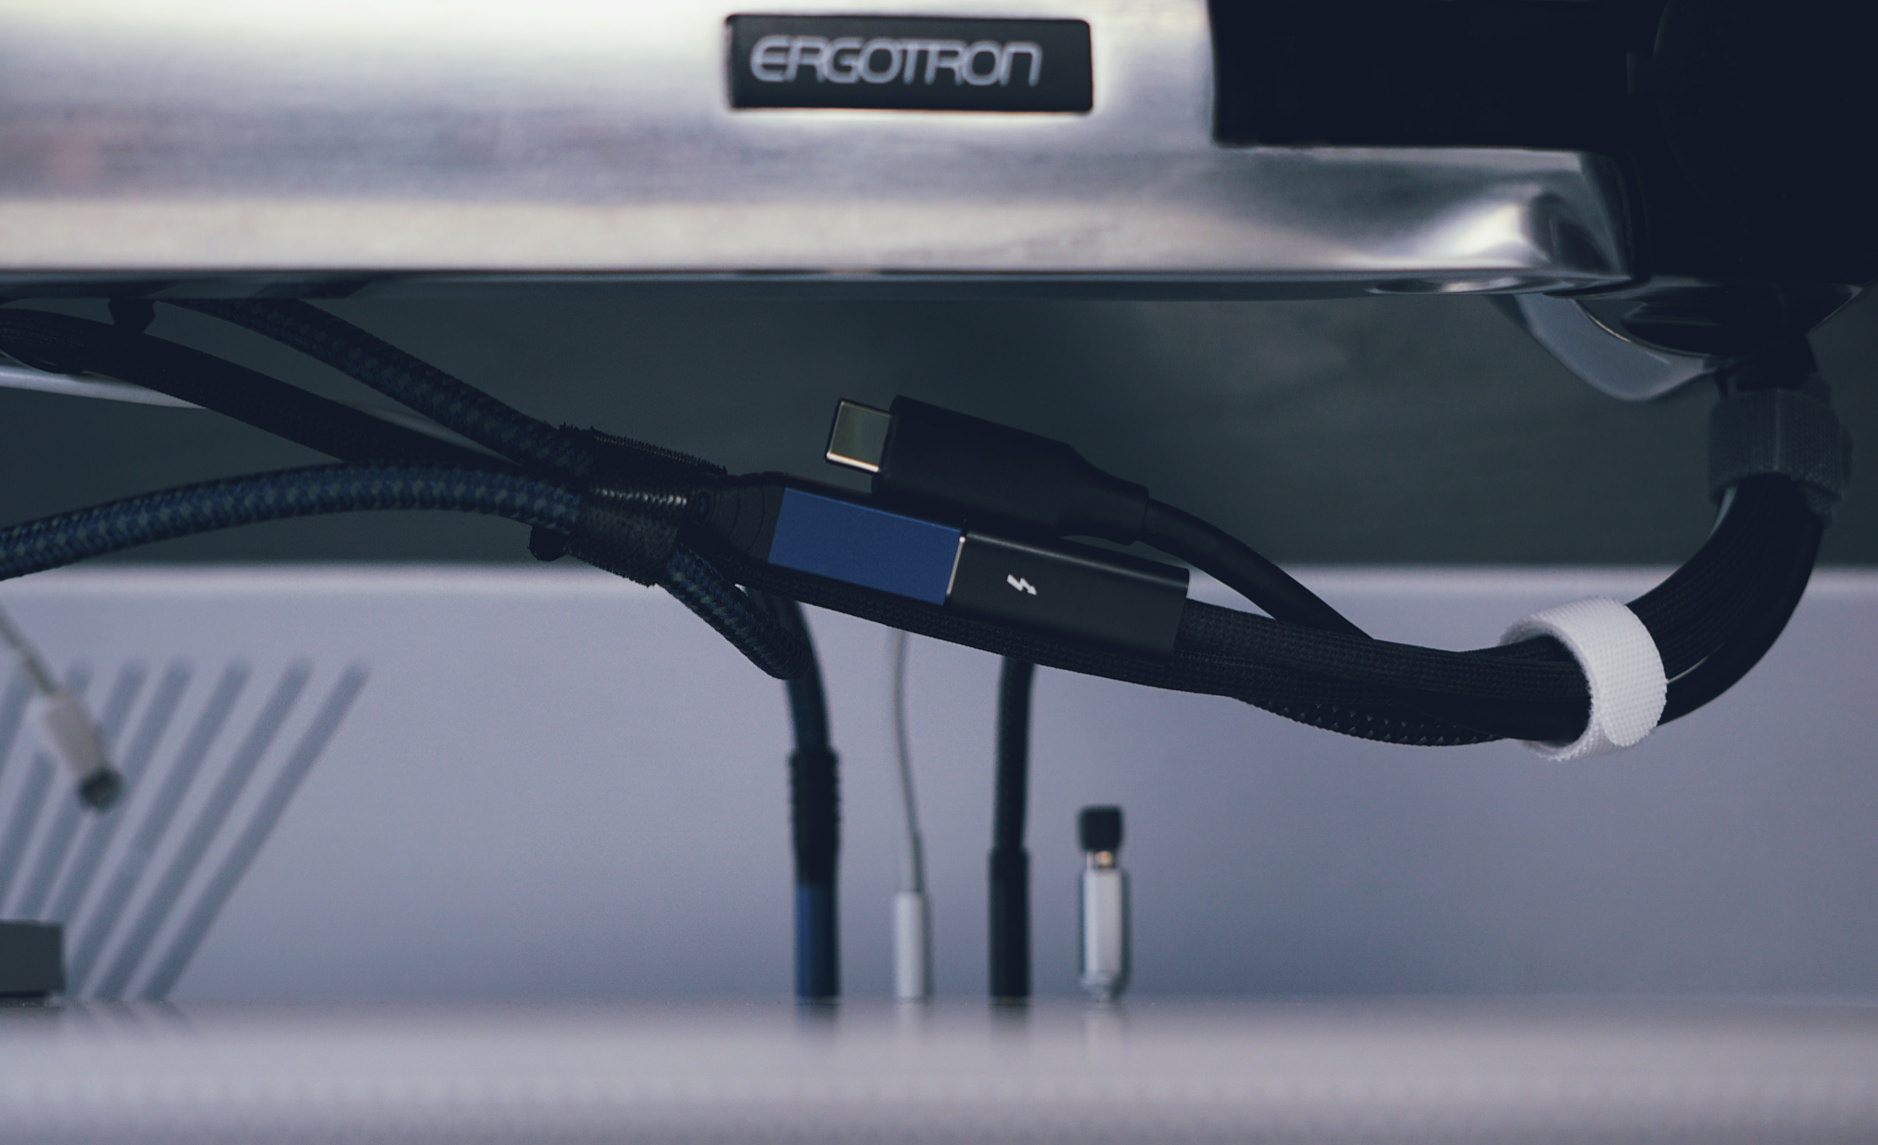 Bild zeigt Ergotron-Monitorhalterung und Thunderbolt-Kabel.